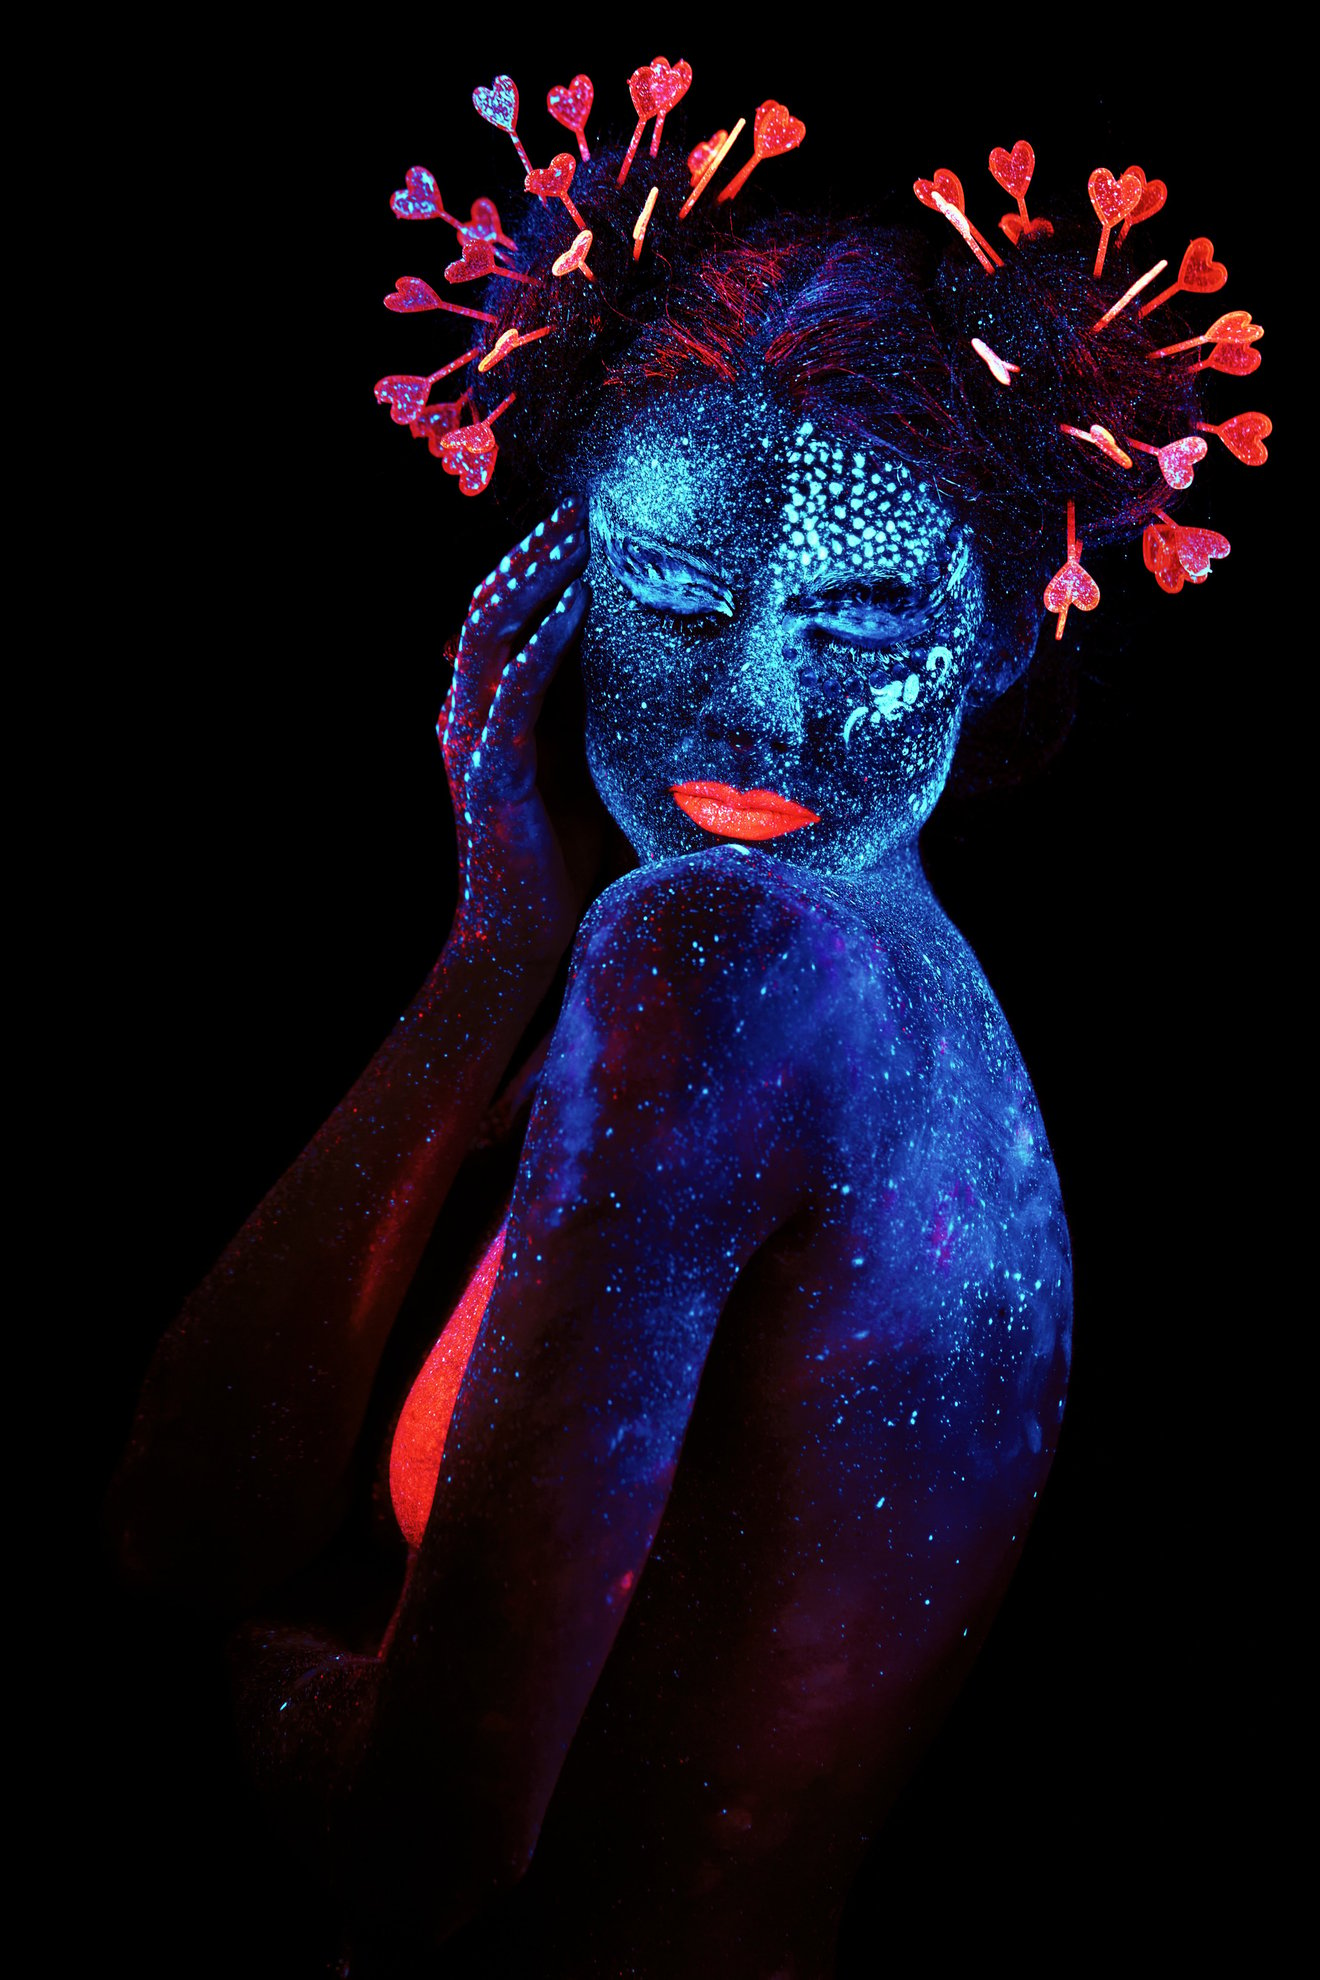 UV glowing heart portrait-Seed Nft